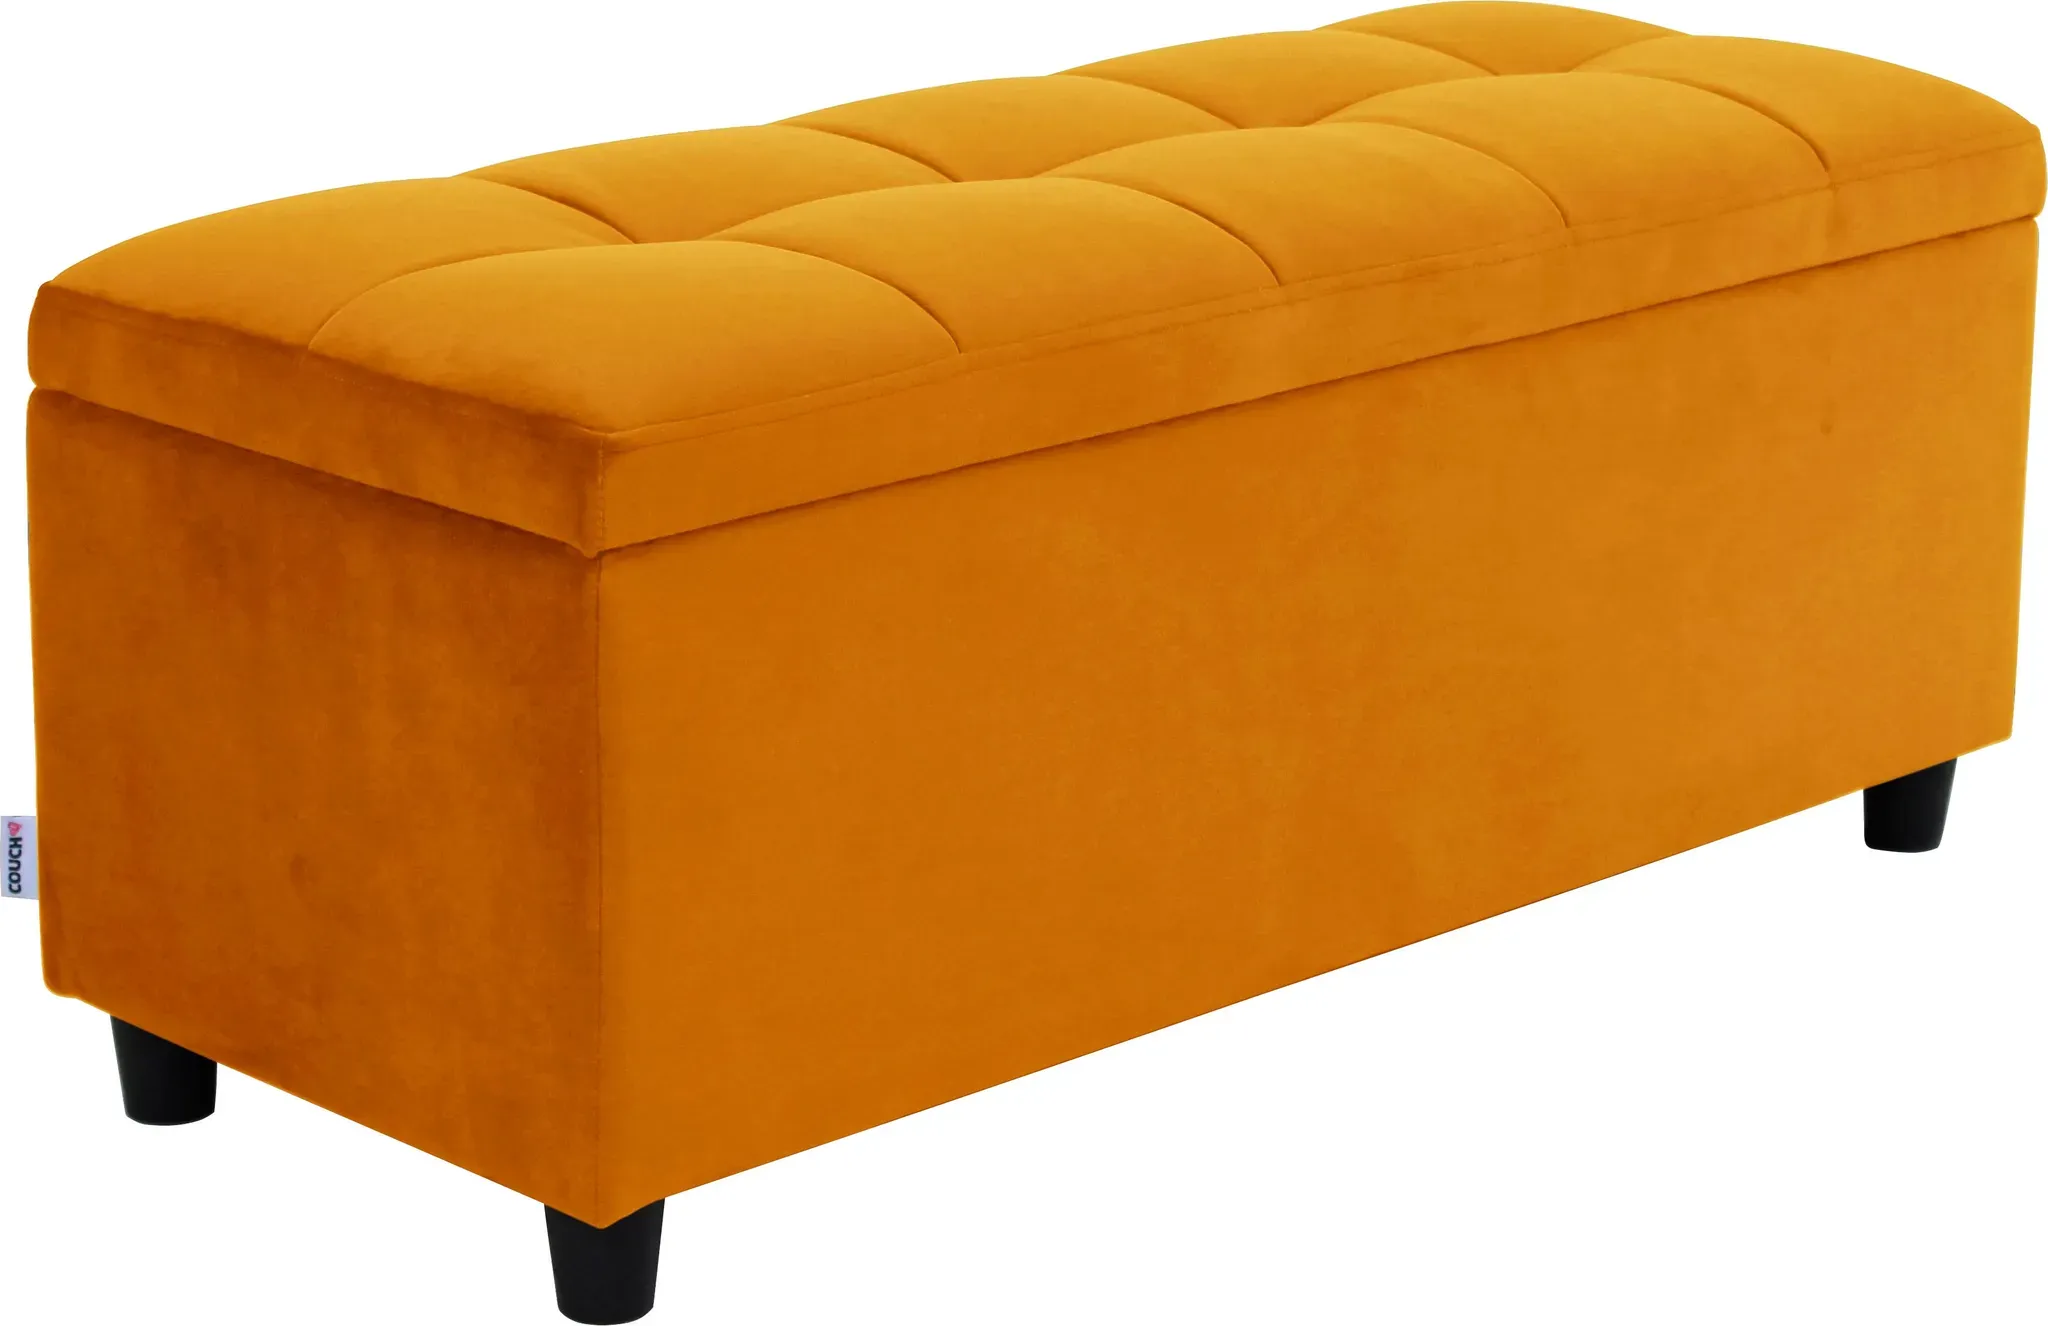 Bettbank "Abgesteppt" Sitzbänke Gr. B/H/T: 100 cm x 42,5 cm x 40 cm, Microfaser, goldfarben (gold) Bettbänke Mit Stauraum, auch als Garderobenbank geeignet, Polsterbank